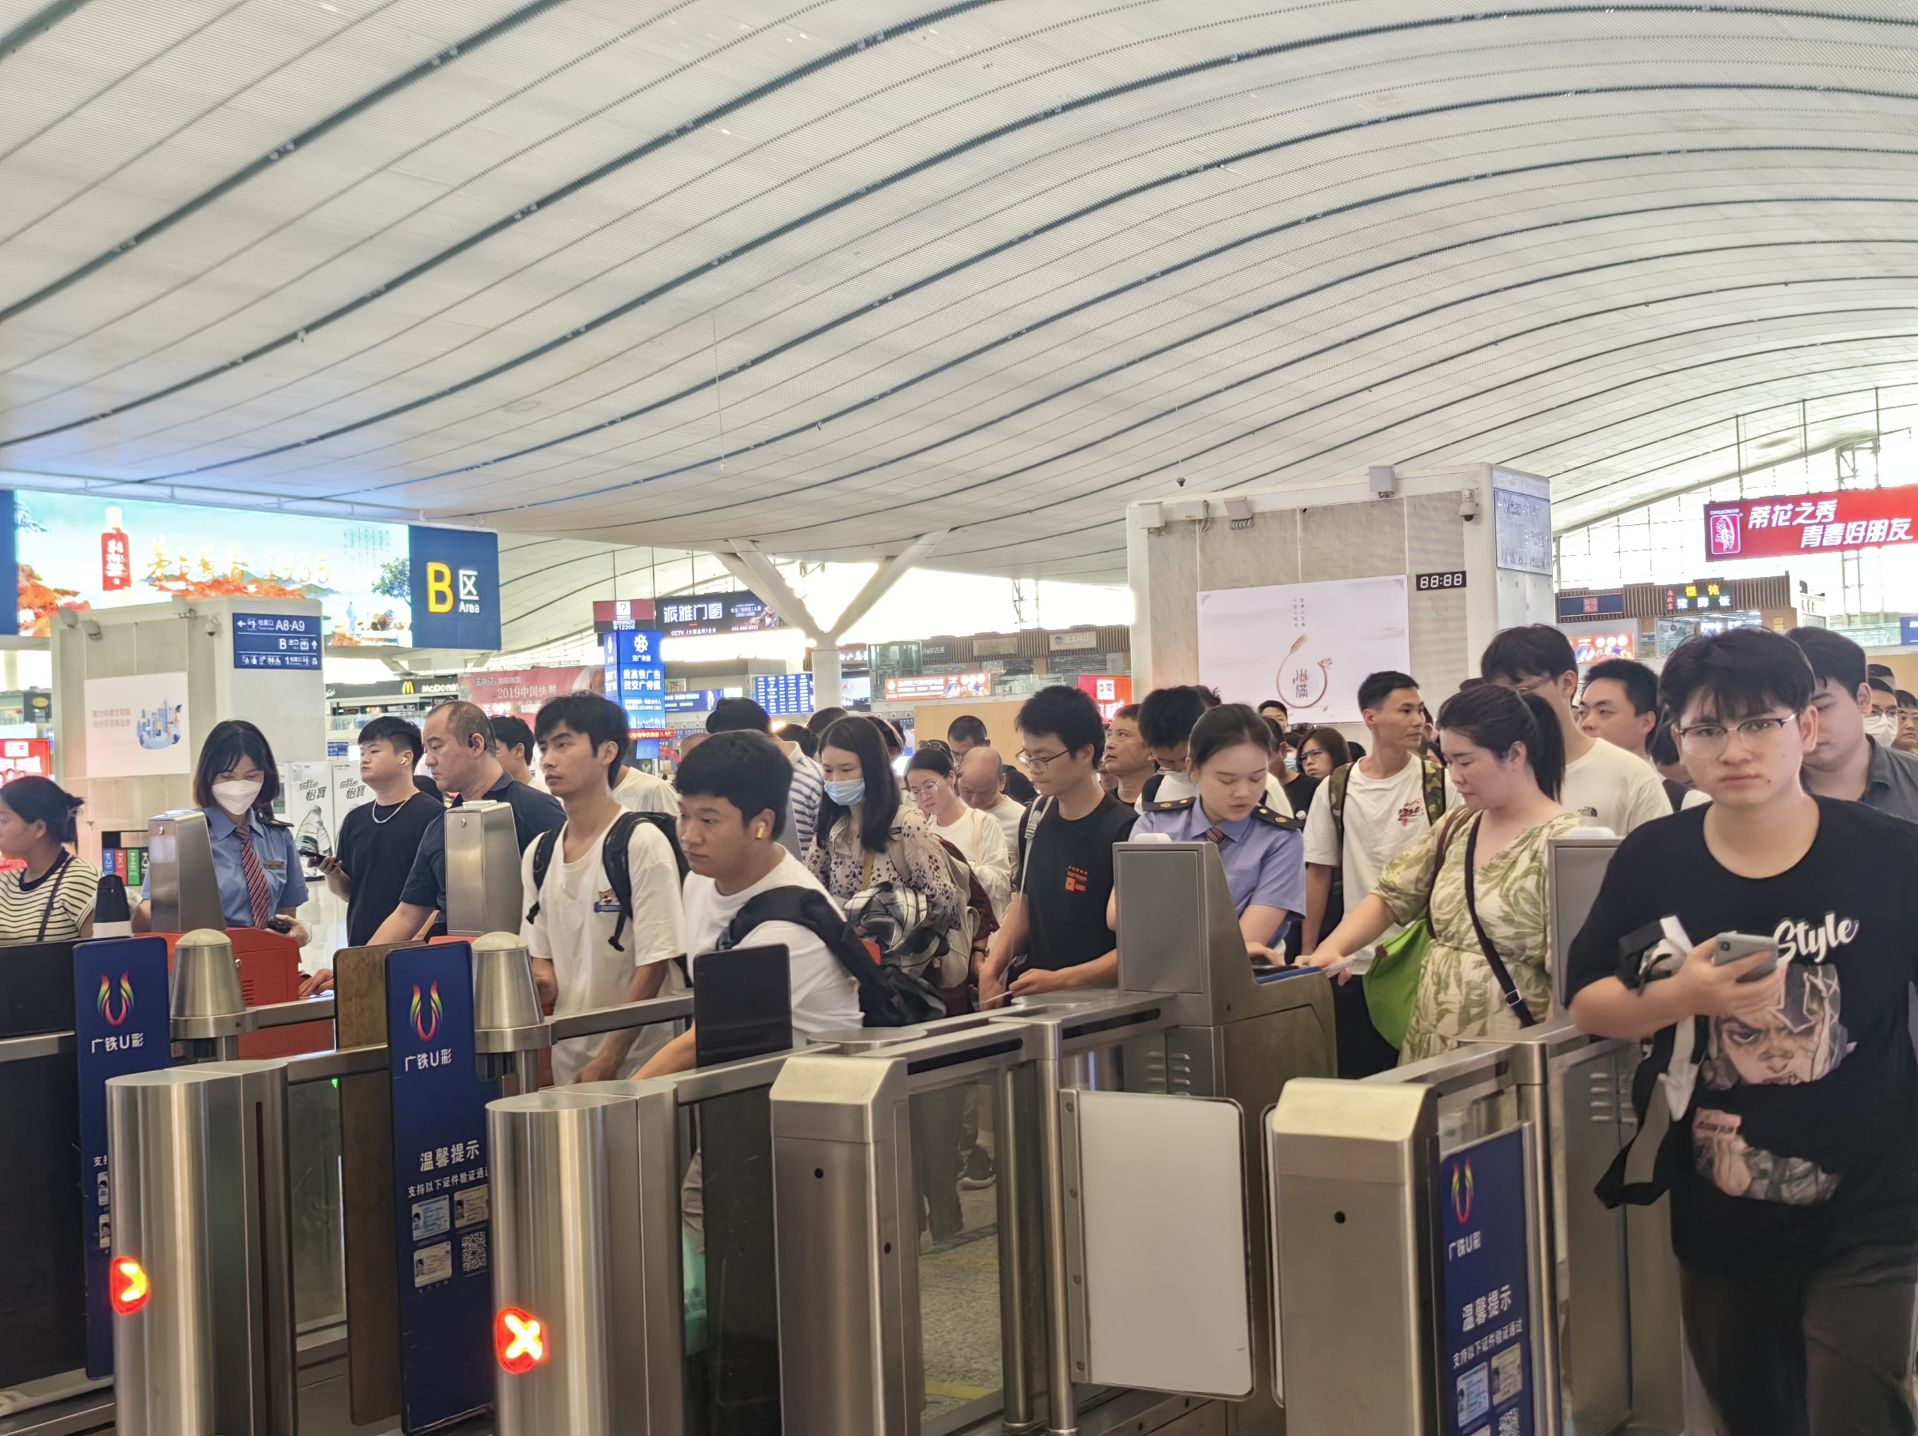 双节“超级黄金周”来临，深圳铁路将增开列车、开行夜间高铁